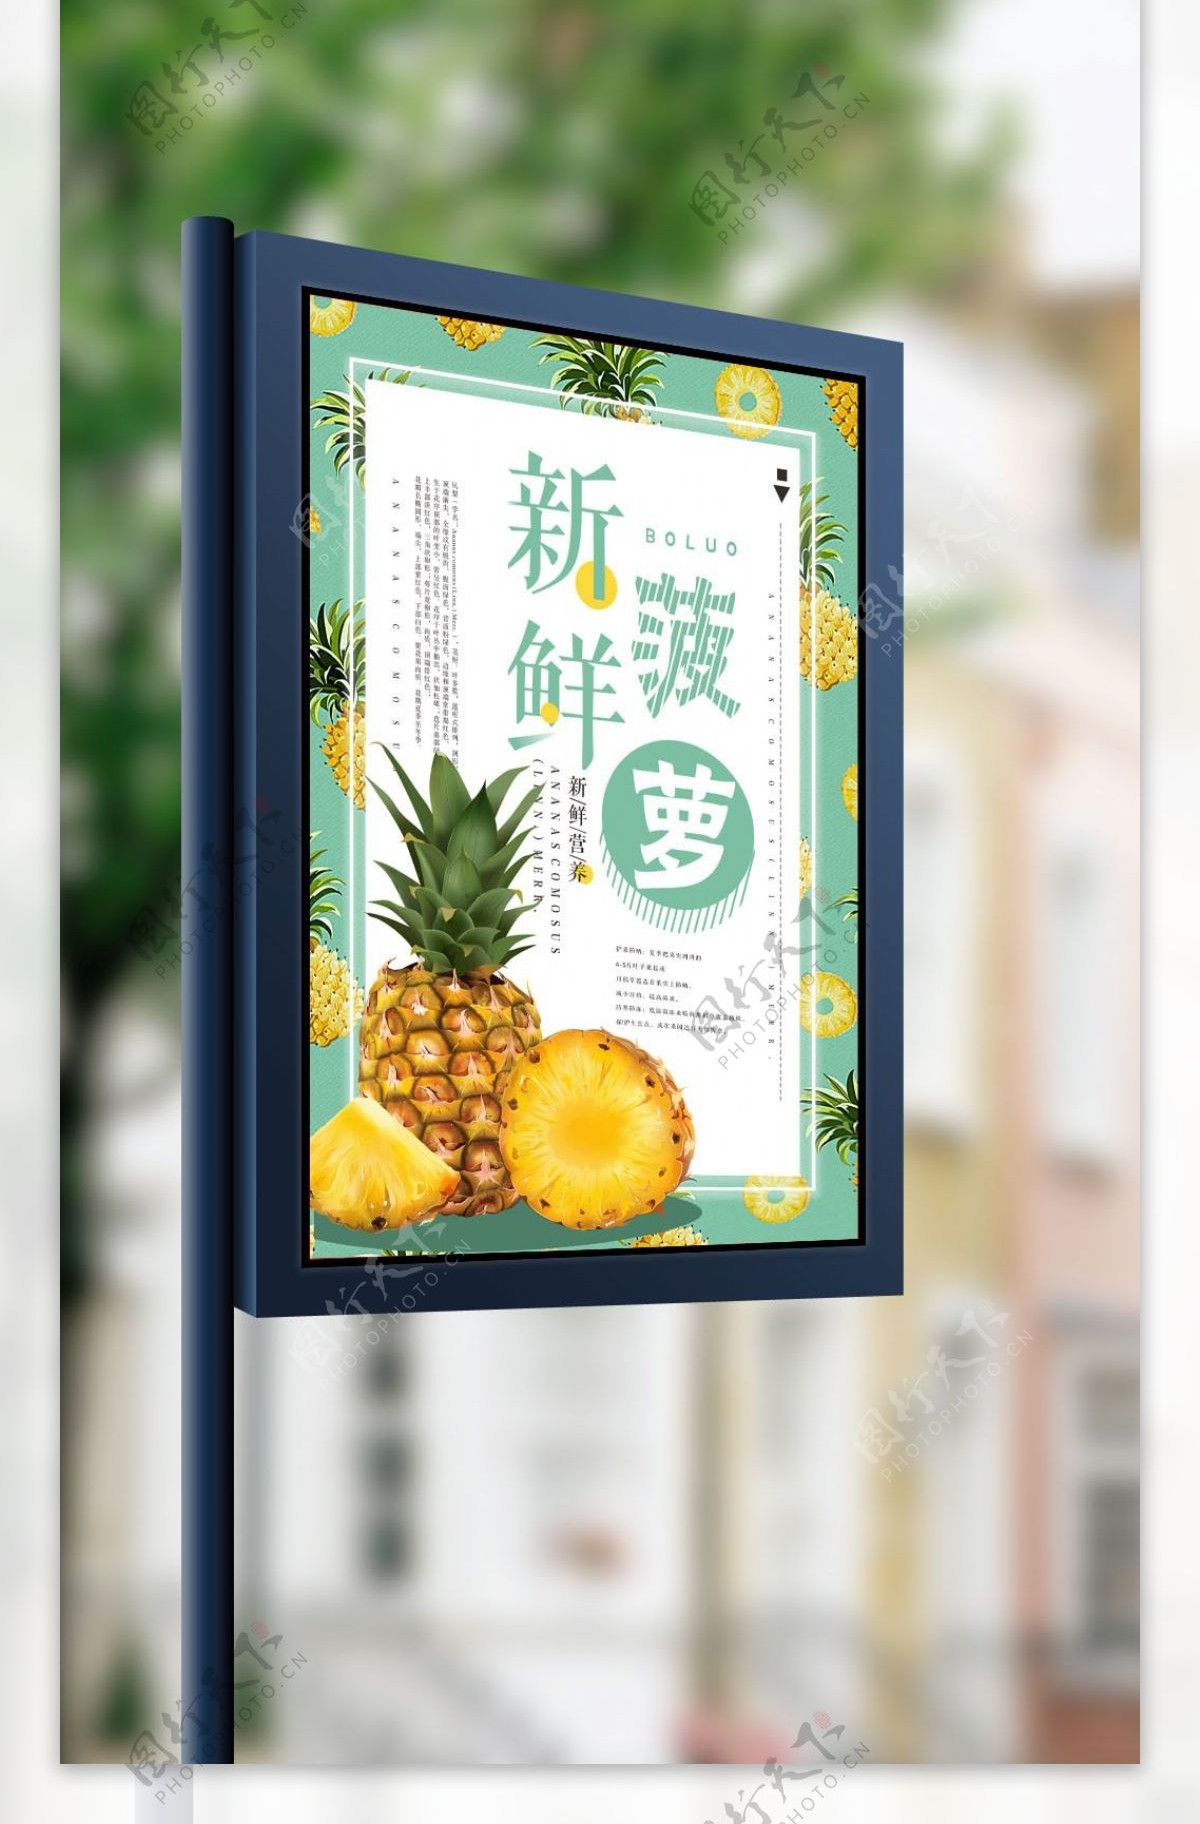 简约新鲜菠萝海报设计